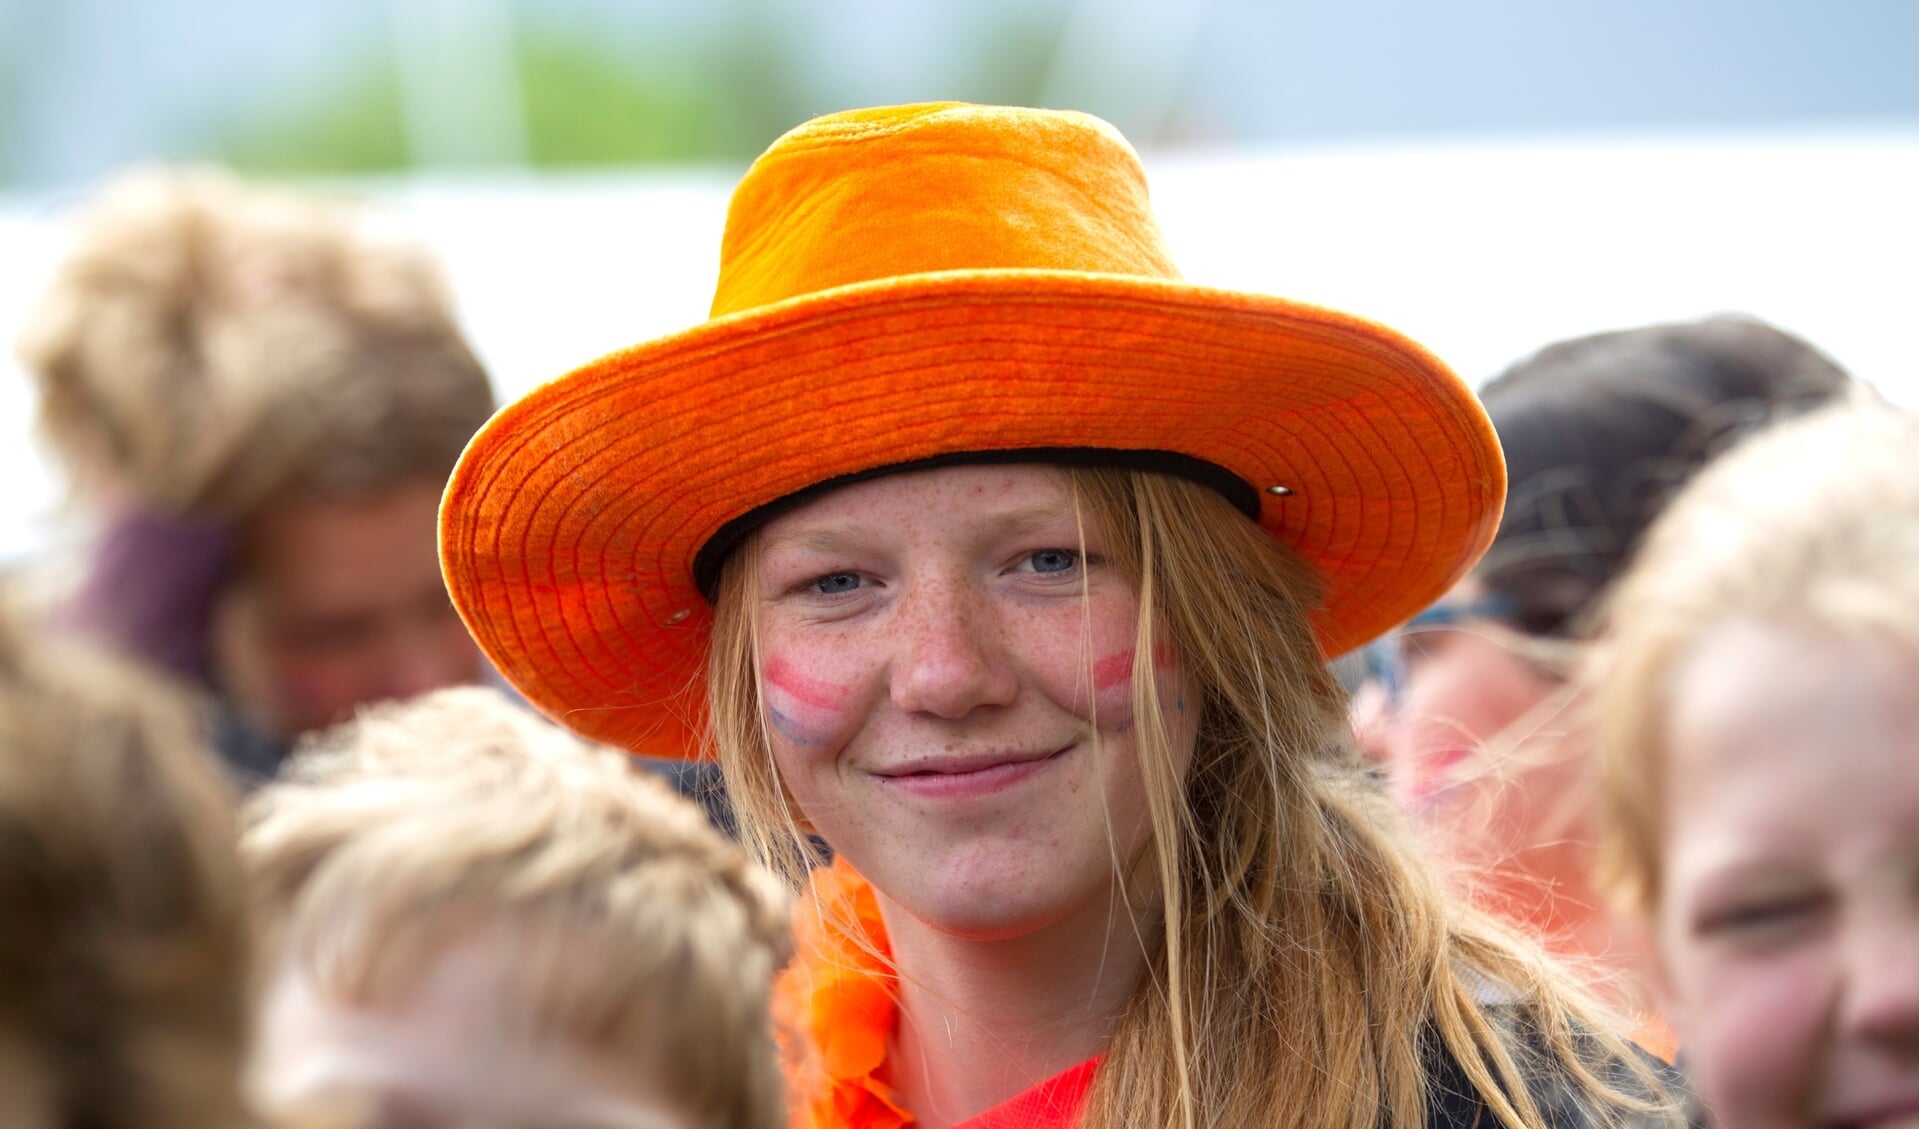 De Samen Sterk Oranjetour gaat door. Dankzij een online initiatief krijgt Koningsdag in de gemeente Barneveld toch een feestelijk tintje (archieffoto).